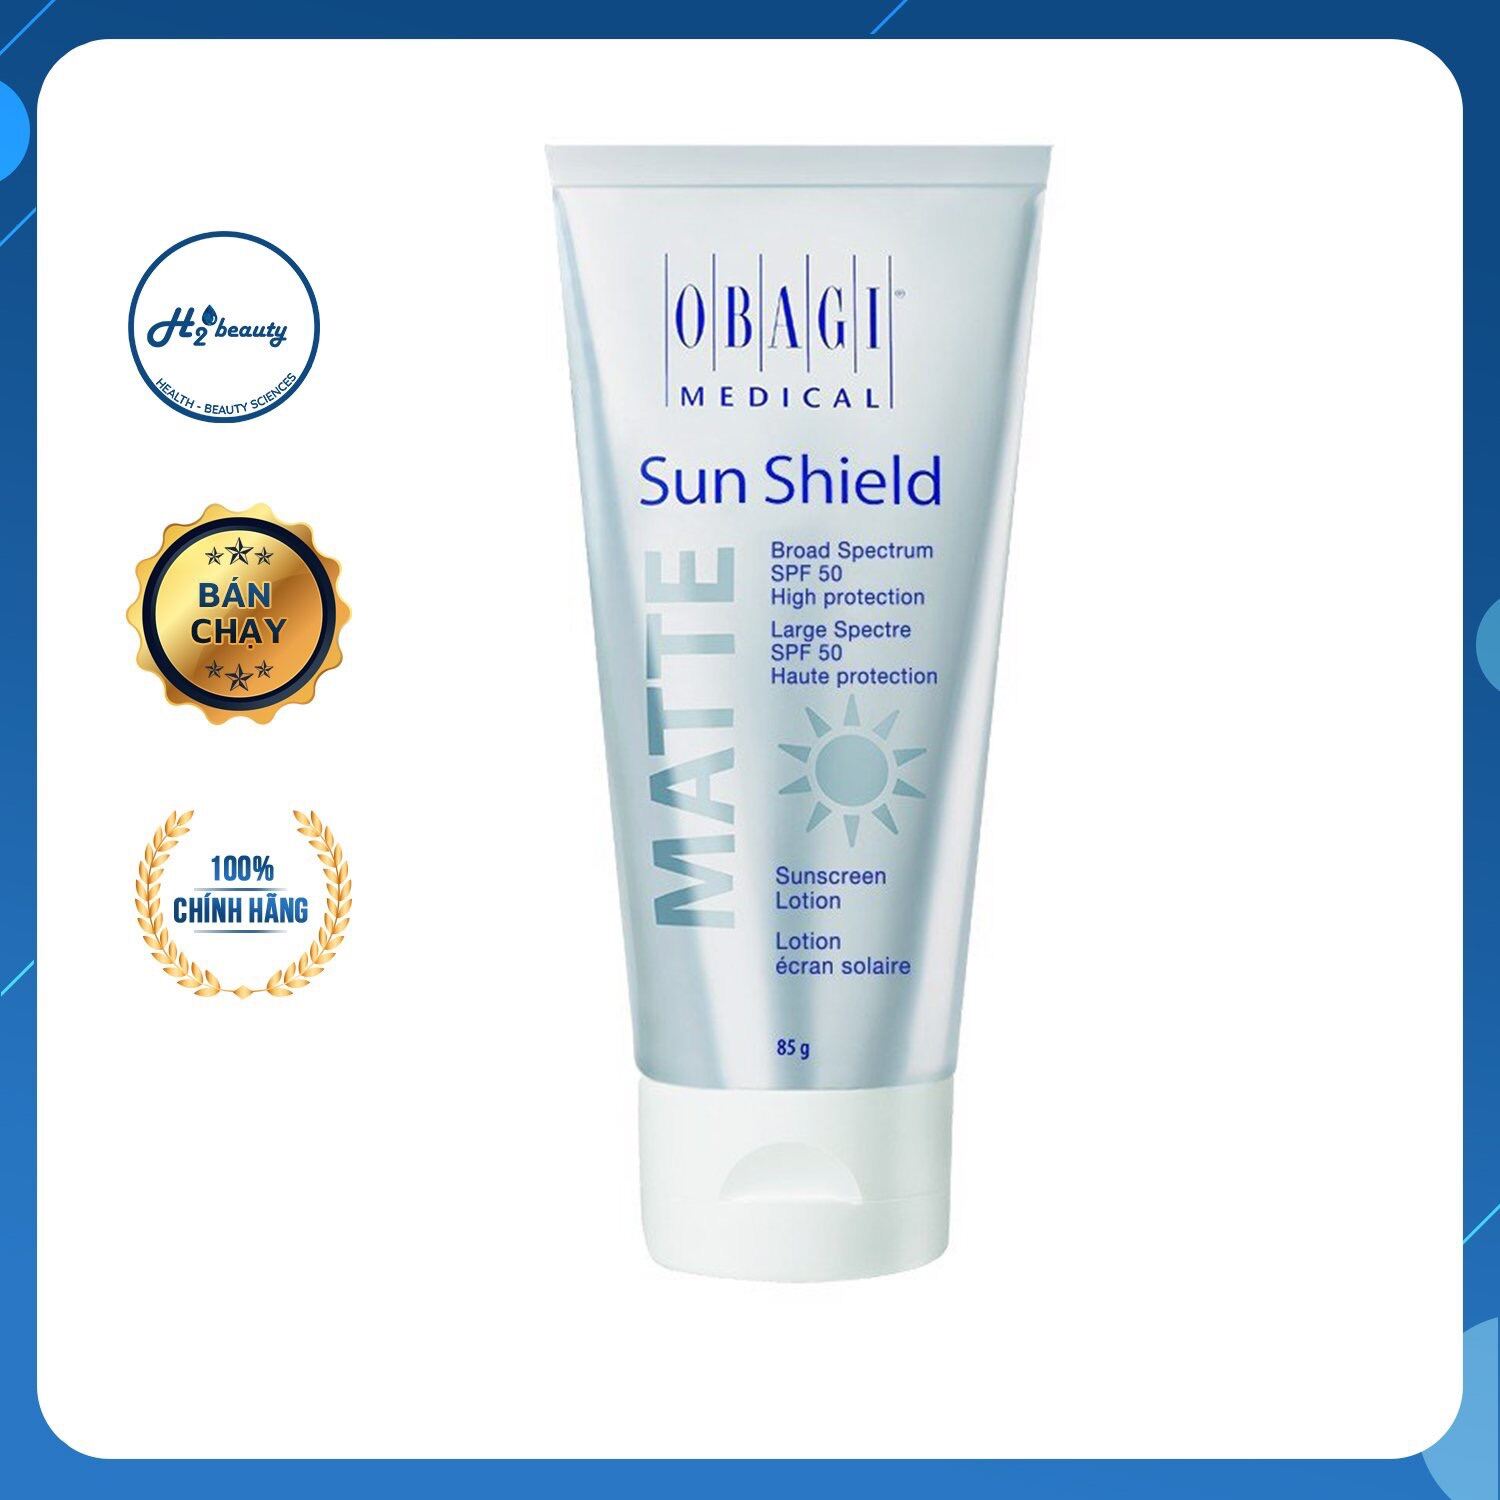 Kem chống nắng Oba. gi Sun Shield Matte Broad Spectrum SPF 50 Premium bảo vệ da khỏi các bức xạ mặt trời UVA, UVB , ngăn ngừa cháy nắng, lão hóa da - Tuýp 85gam thumbnail